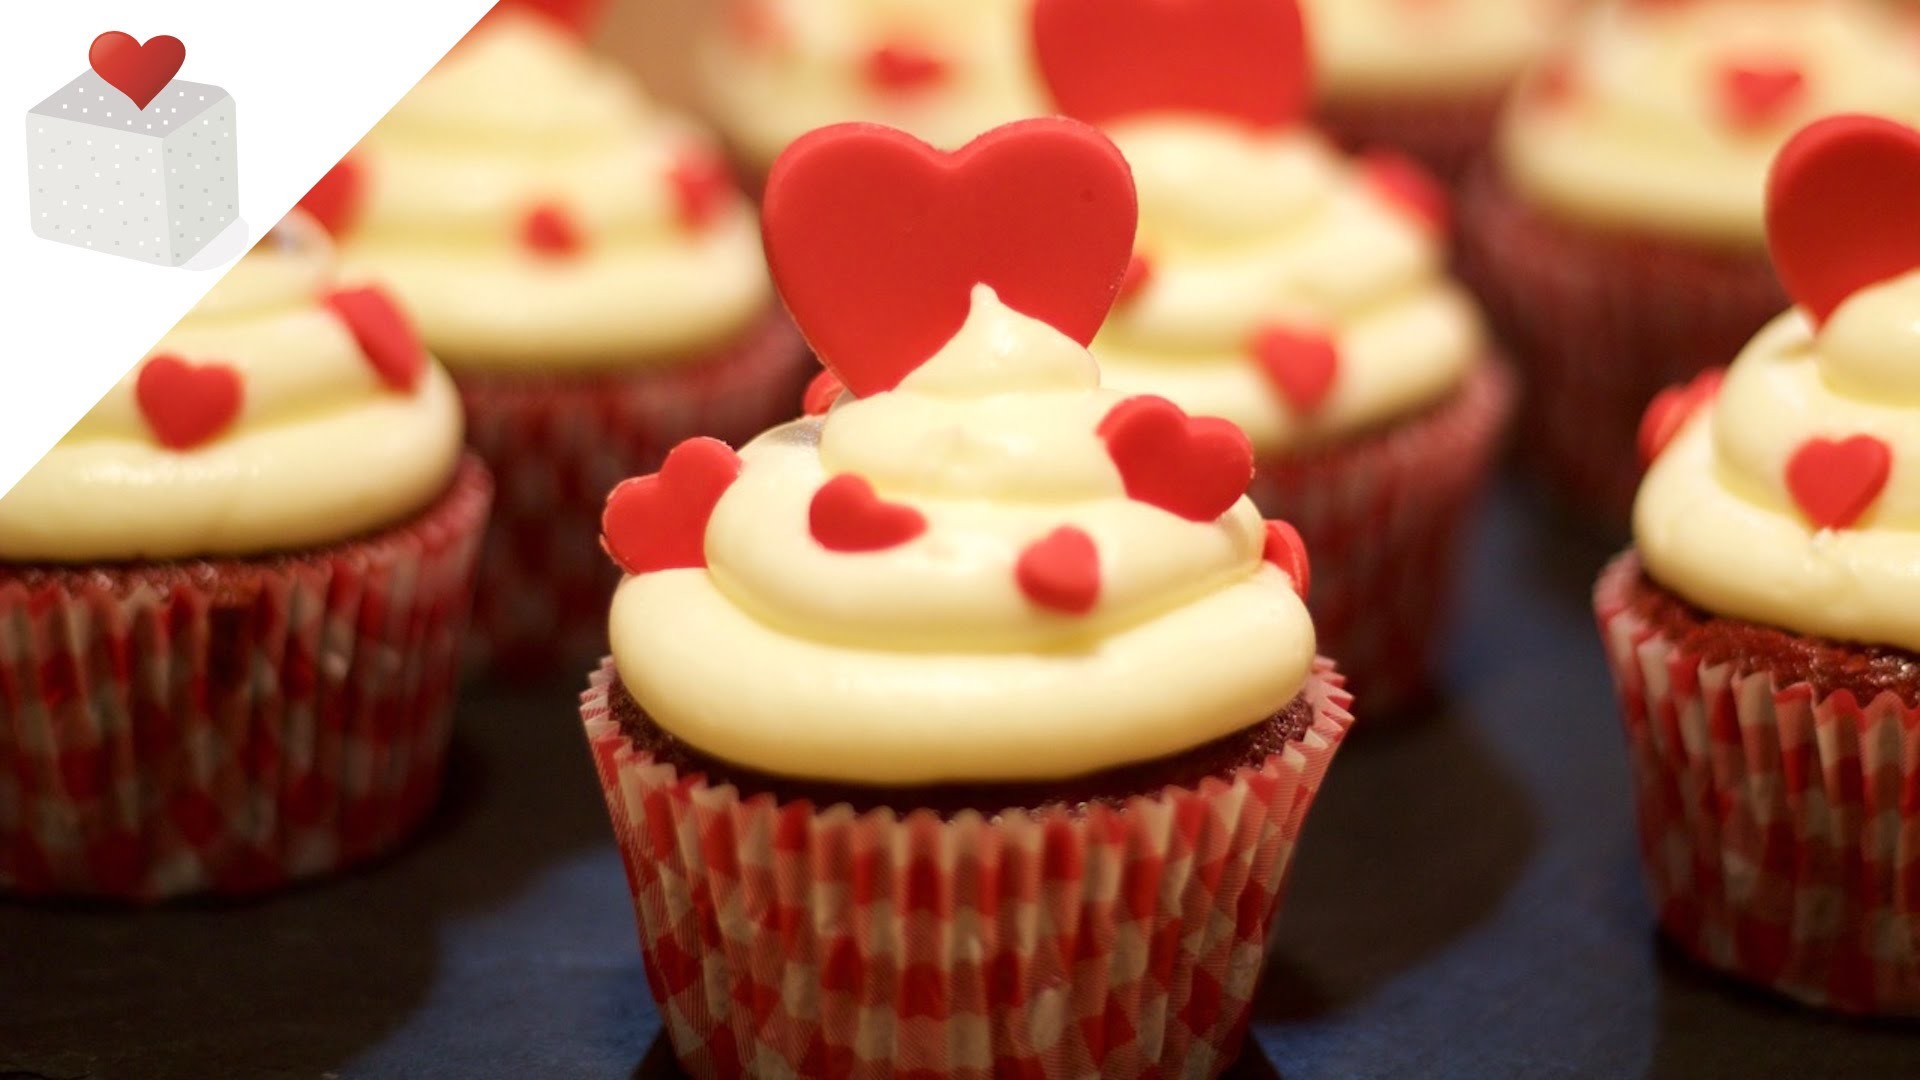 Red Velvet Cupcakes para San Valentín, el día de los enamorados